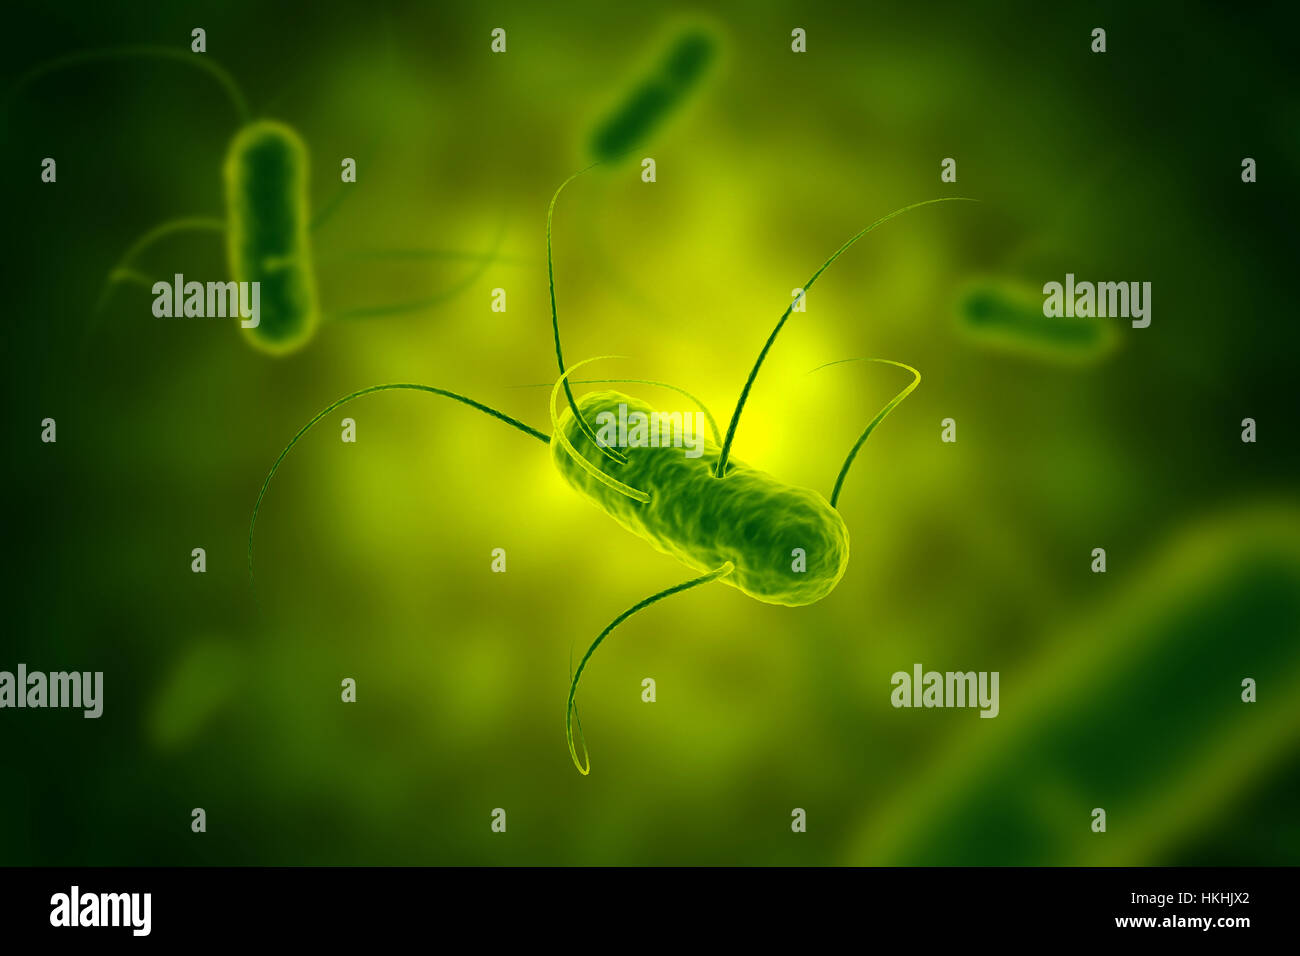 La bactérie salmonella vert avec vue microscopique de flagelles dans illustration fluide Banque D'Images